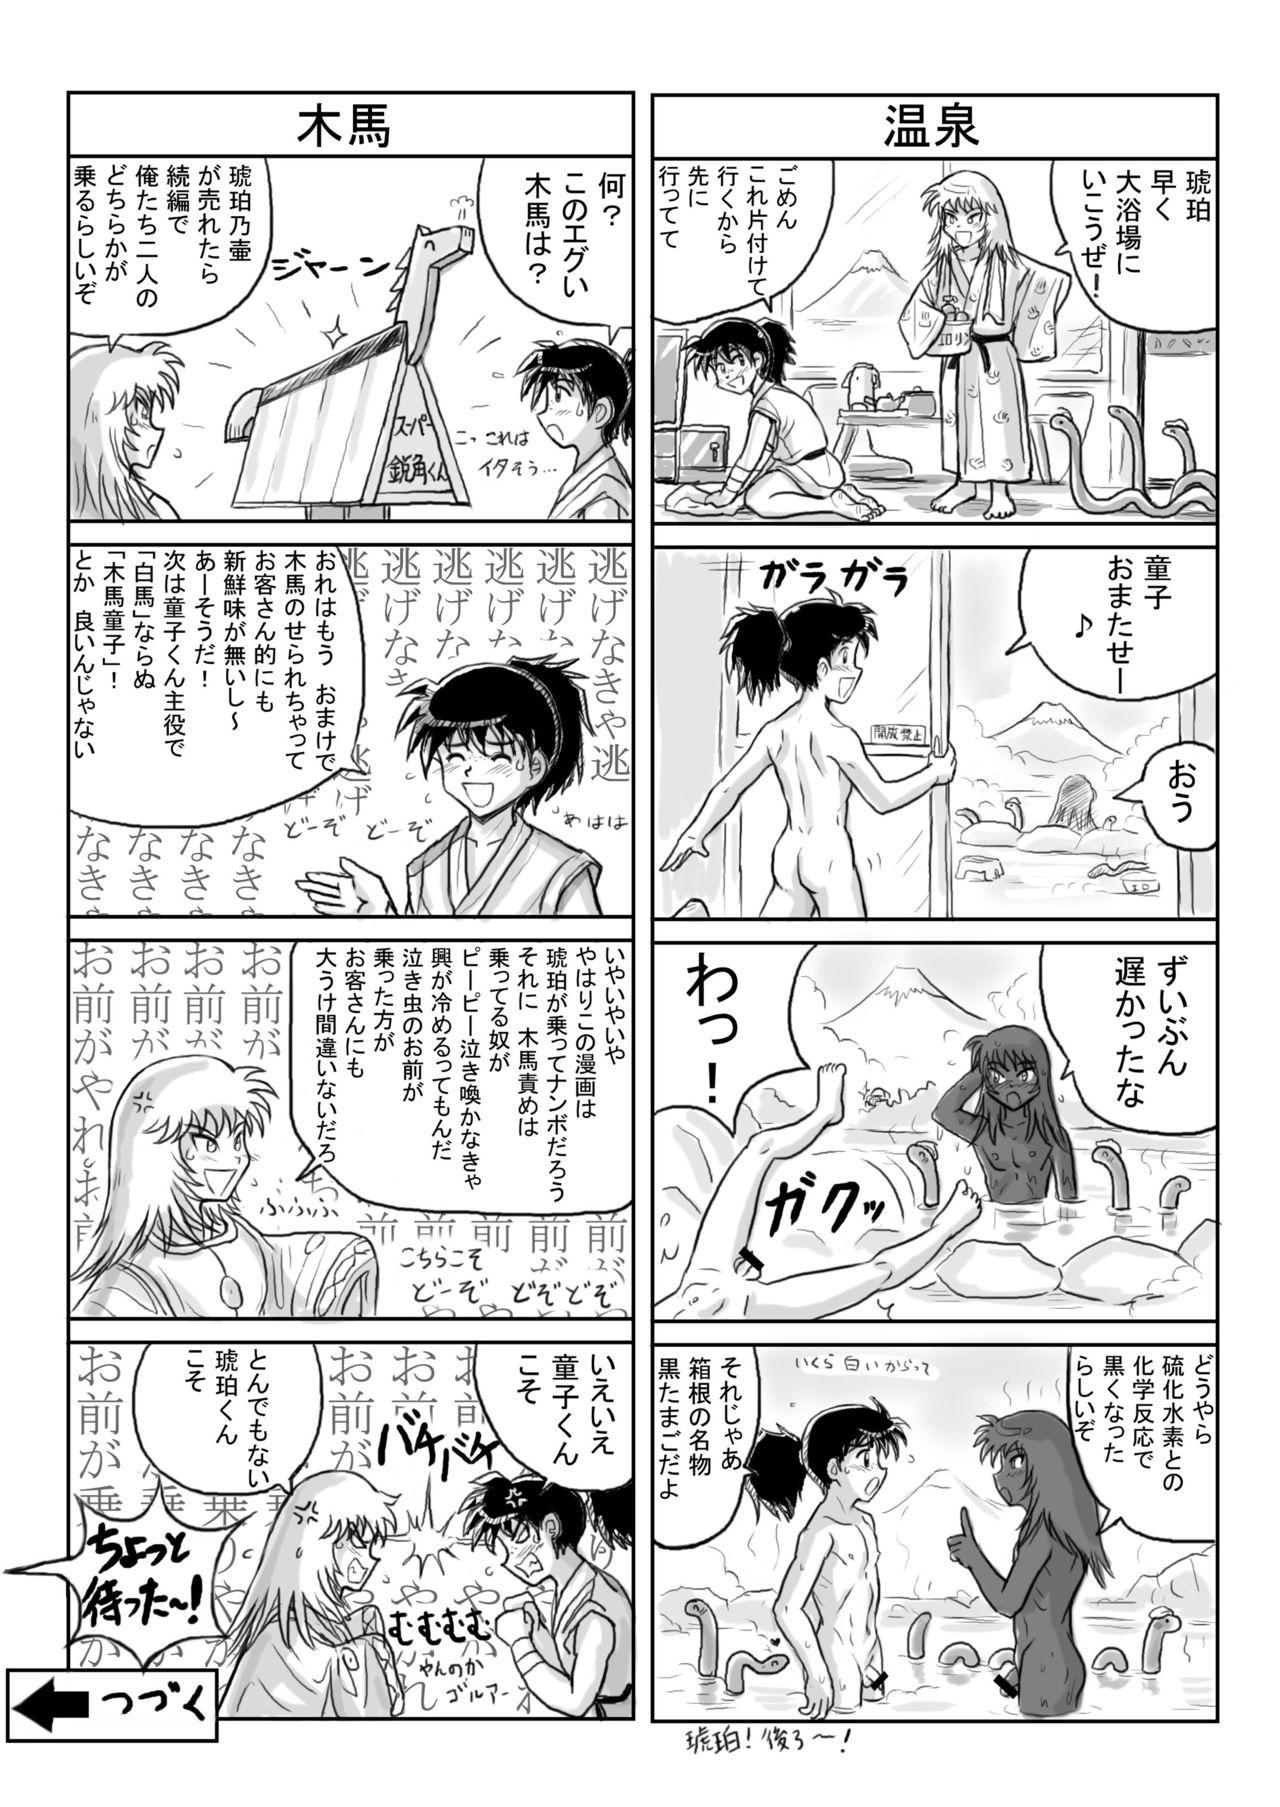 Kohaku no Tsubo Manga-ban 36